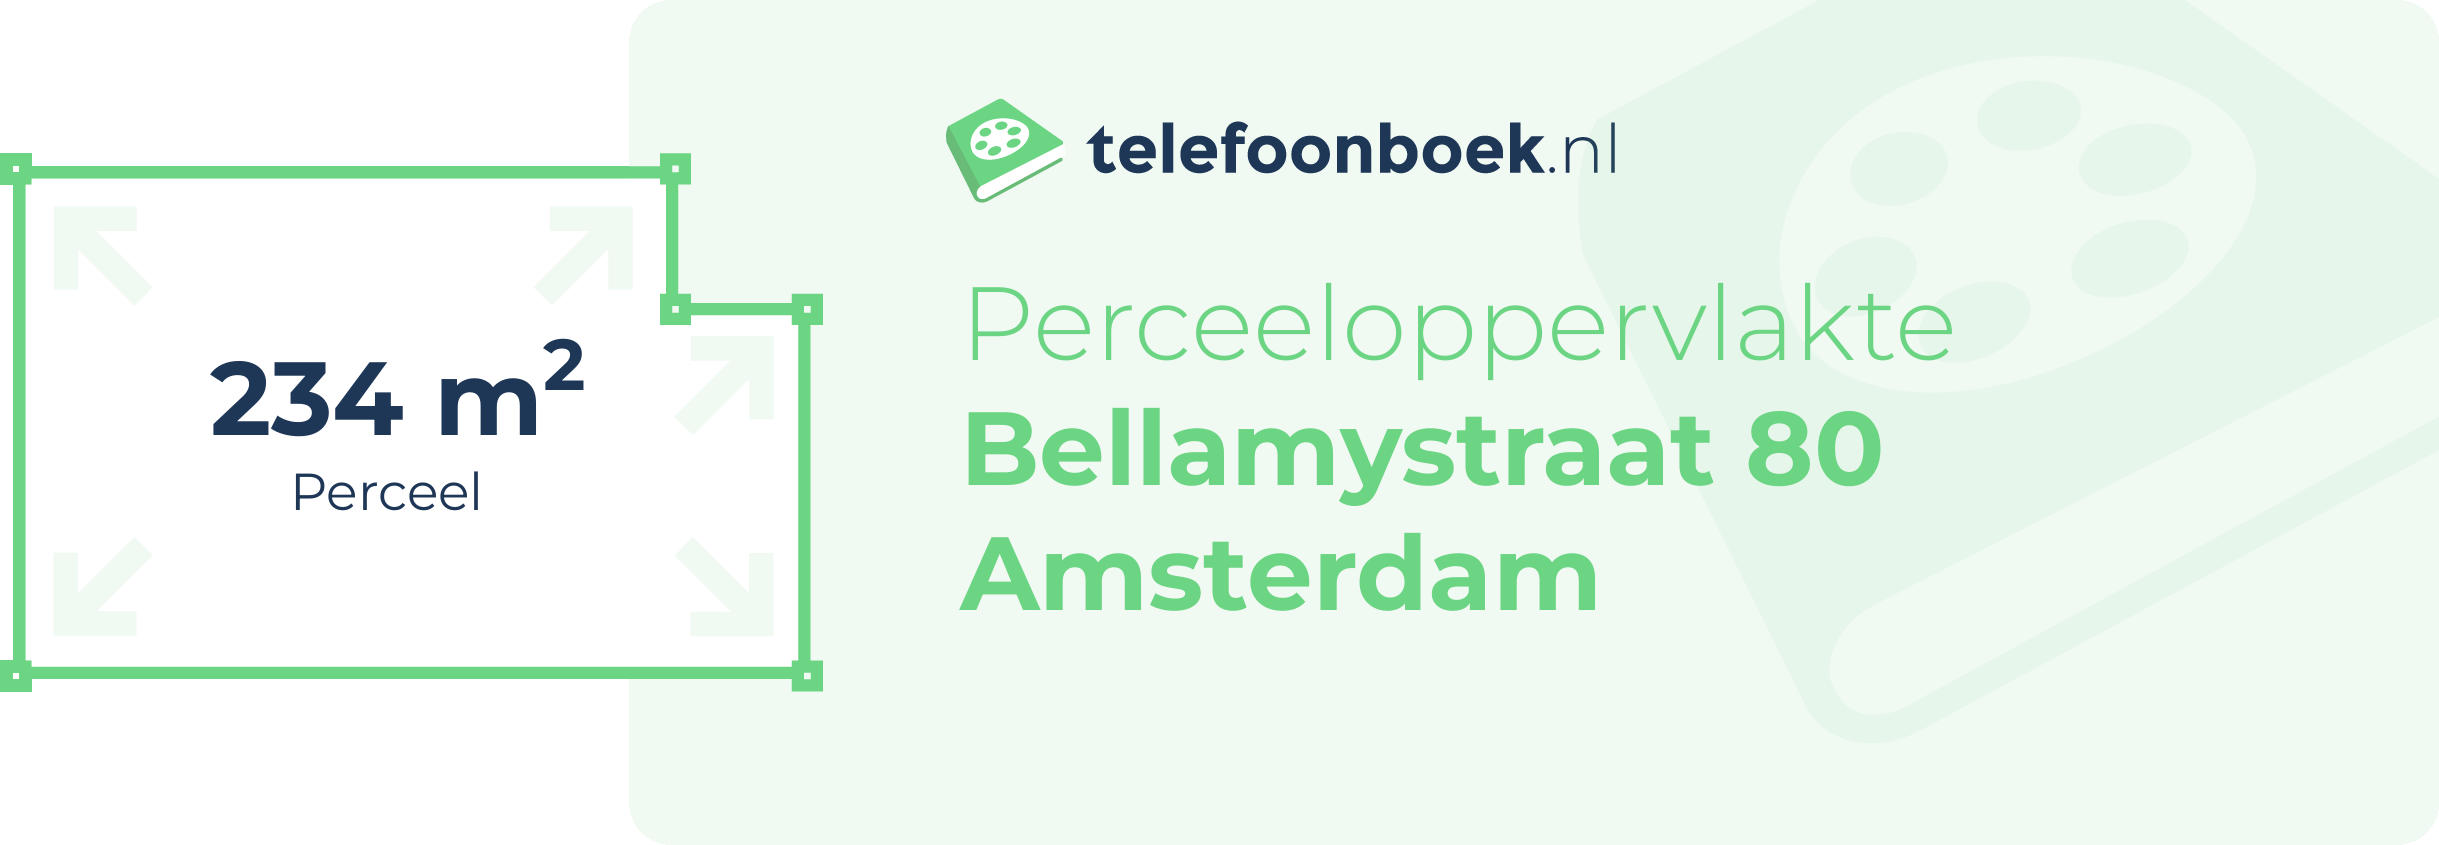 Perceeloppervlakte Bellamystraat 80 Amsterdam